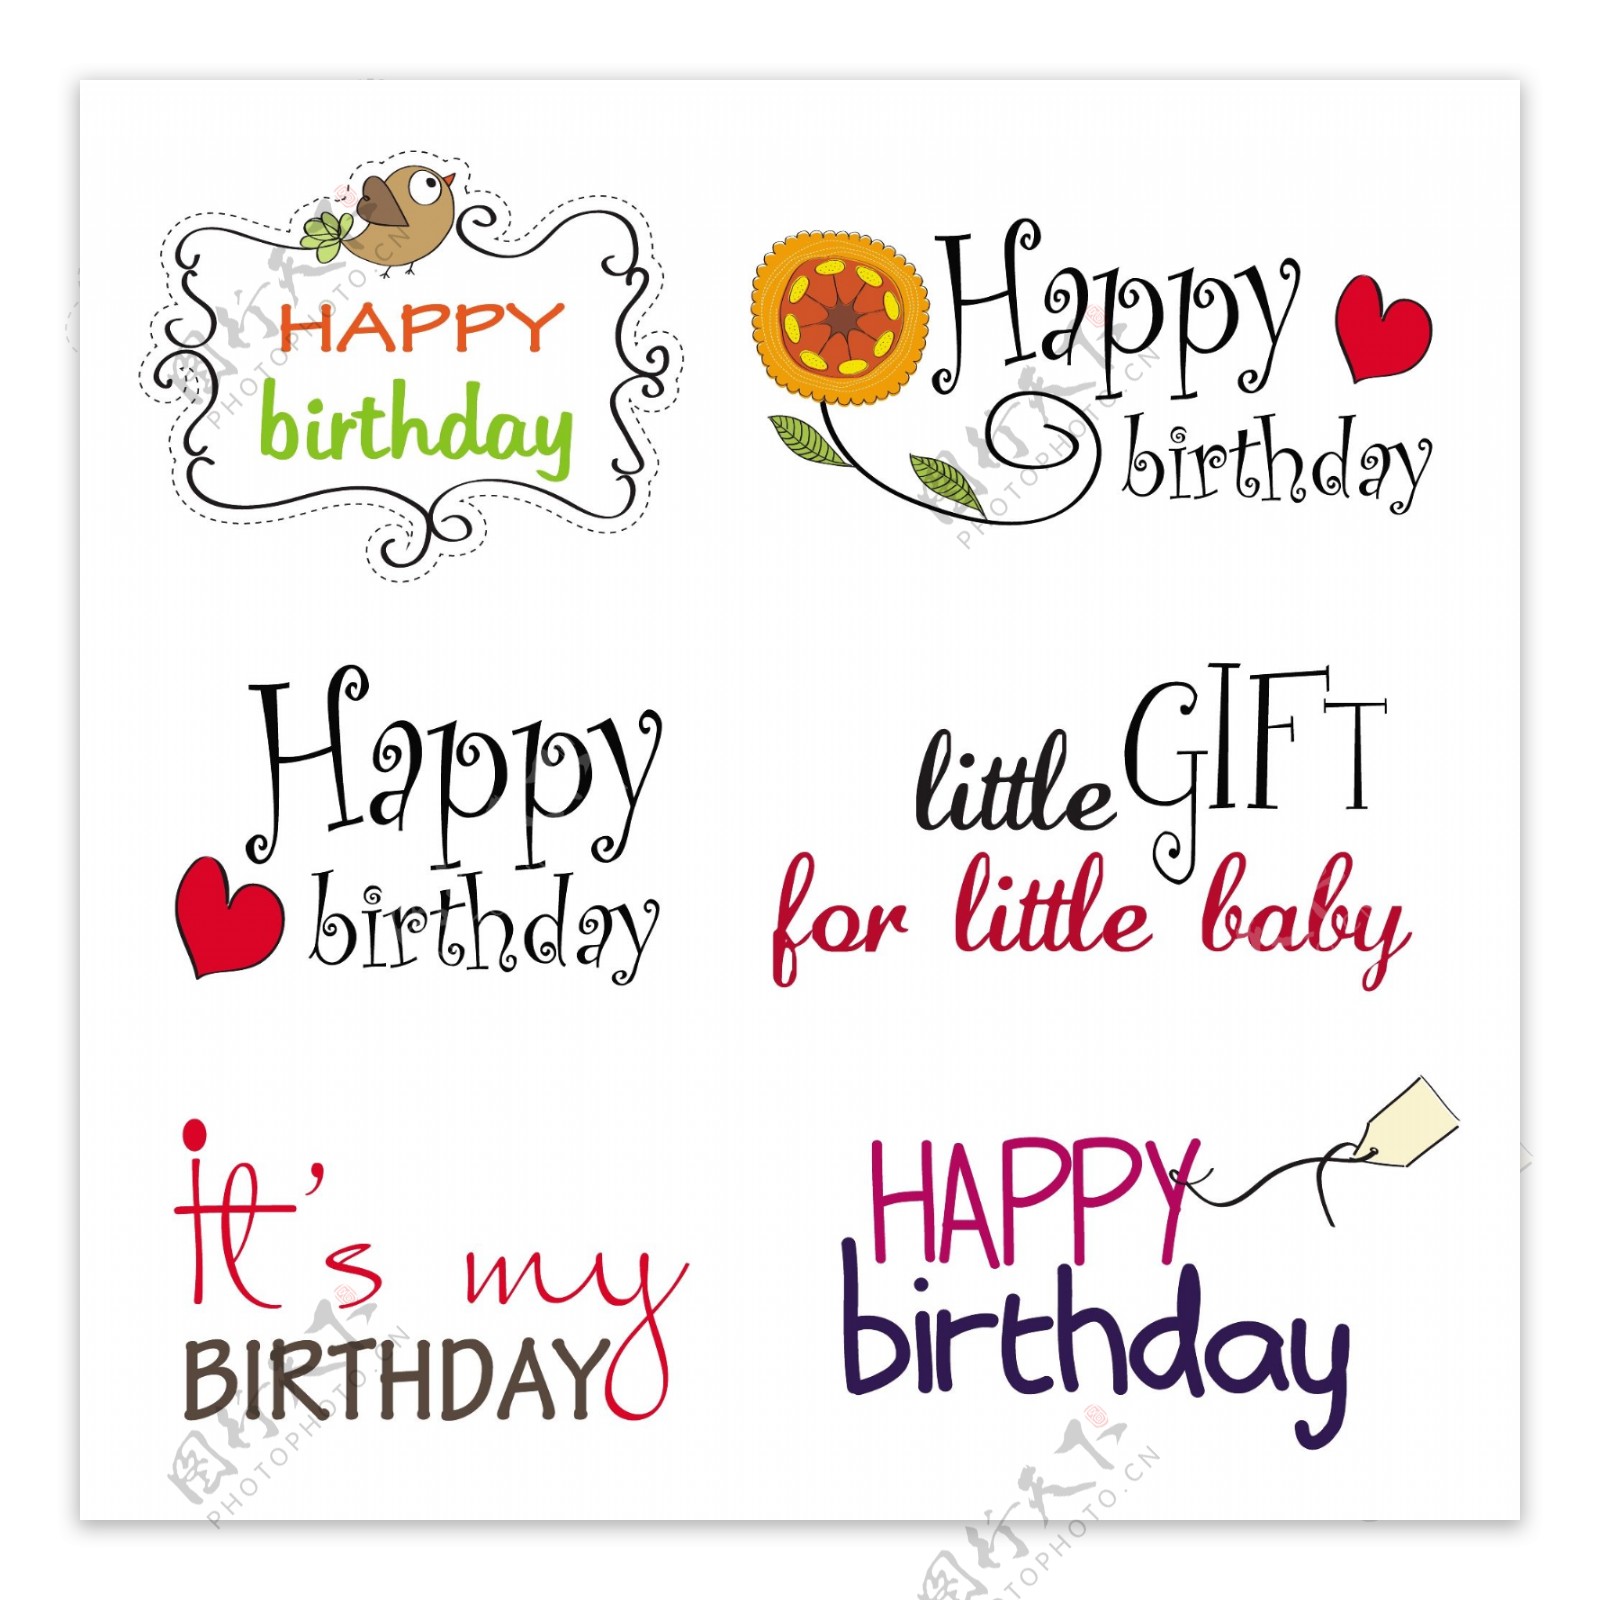 生日快乐英文字体设计卡片